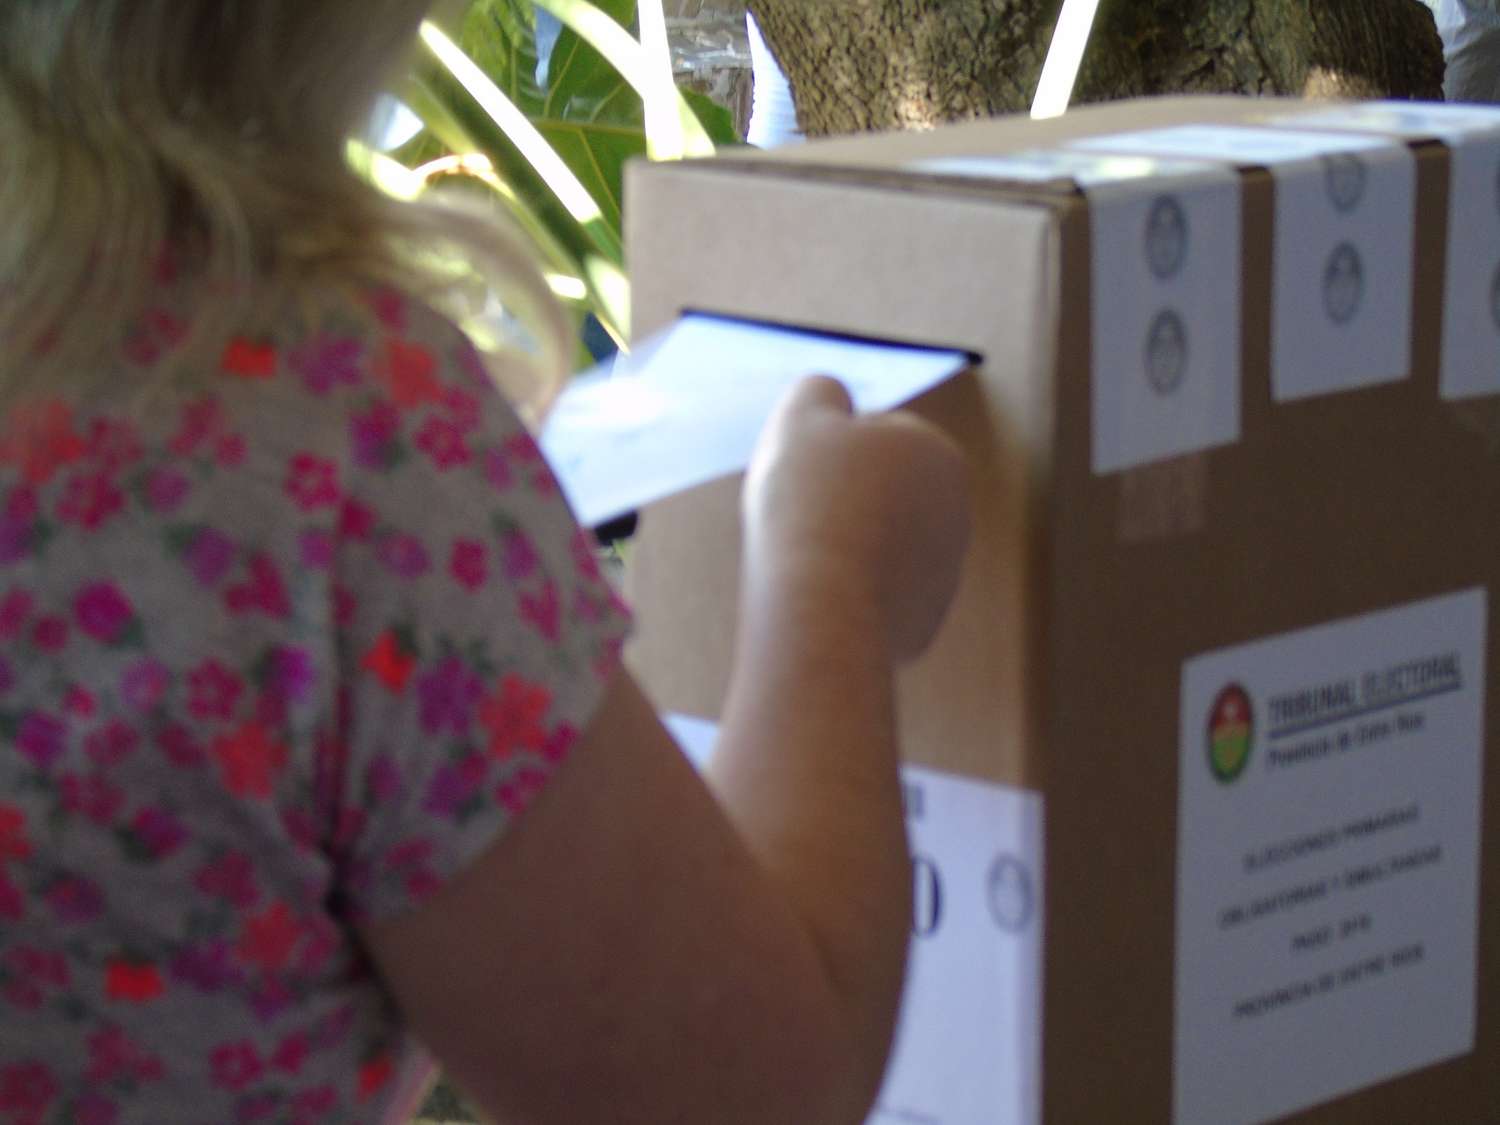 Son 20.008 los ciudadanos habilitados a emitir su voto en las 57 urnas distribuidas en Crespo